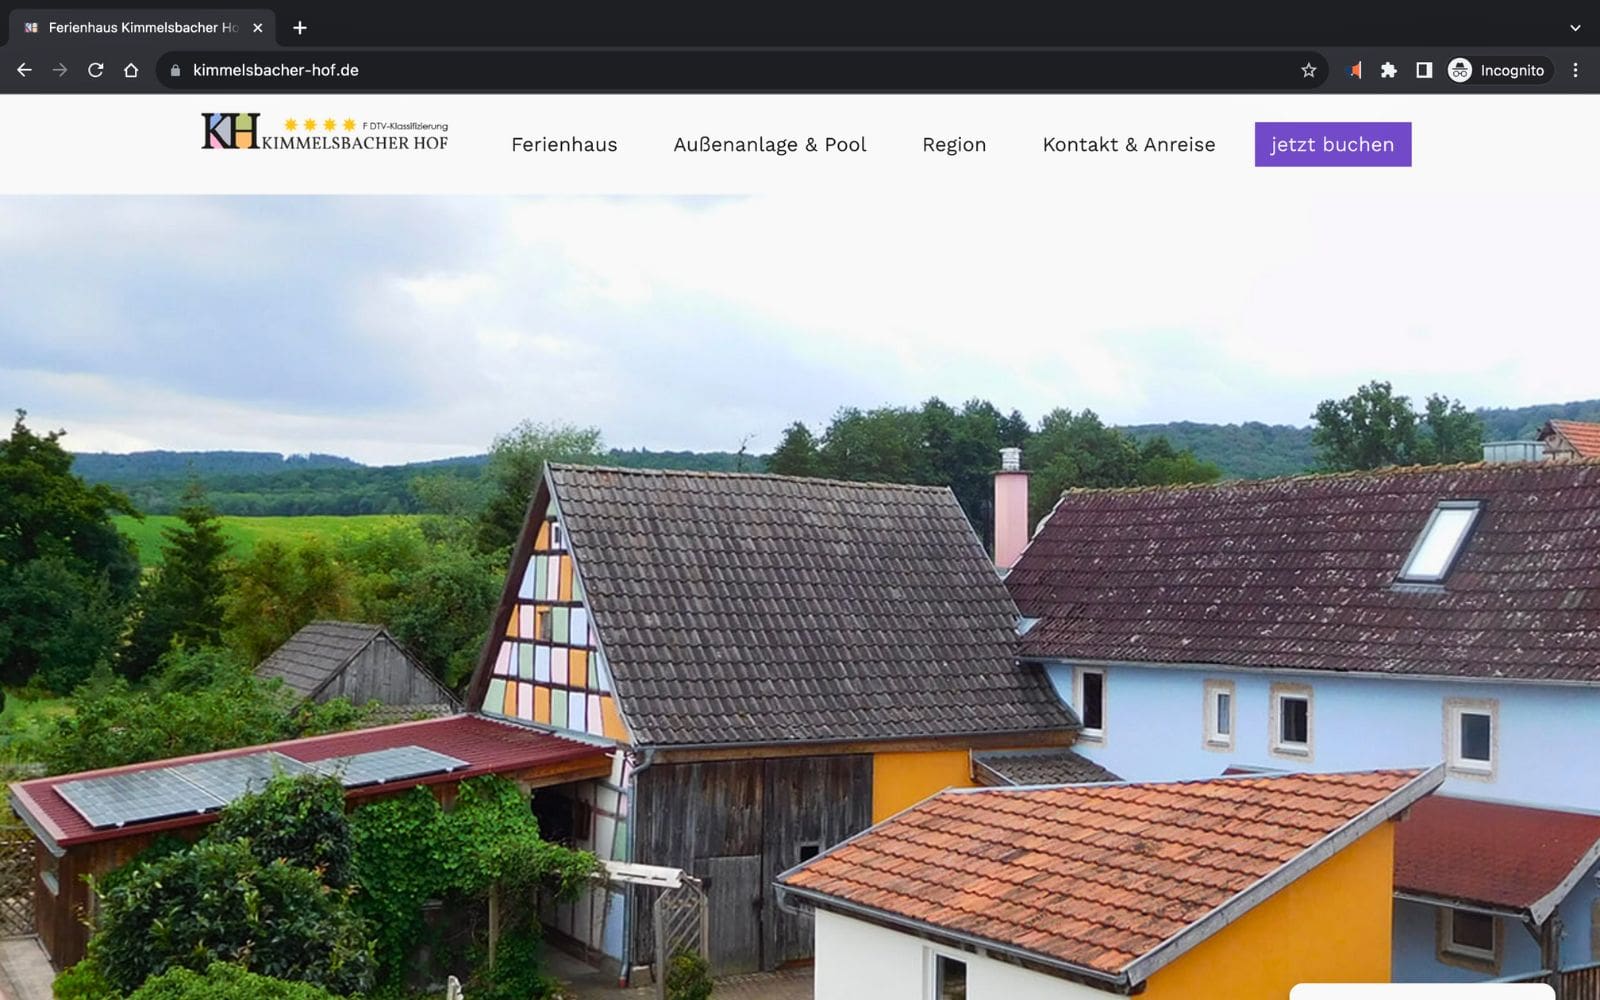 Ferienhaus Bayern Beispiel WordPress mit Elementor